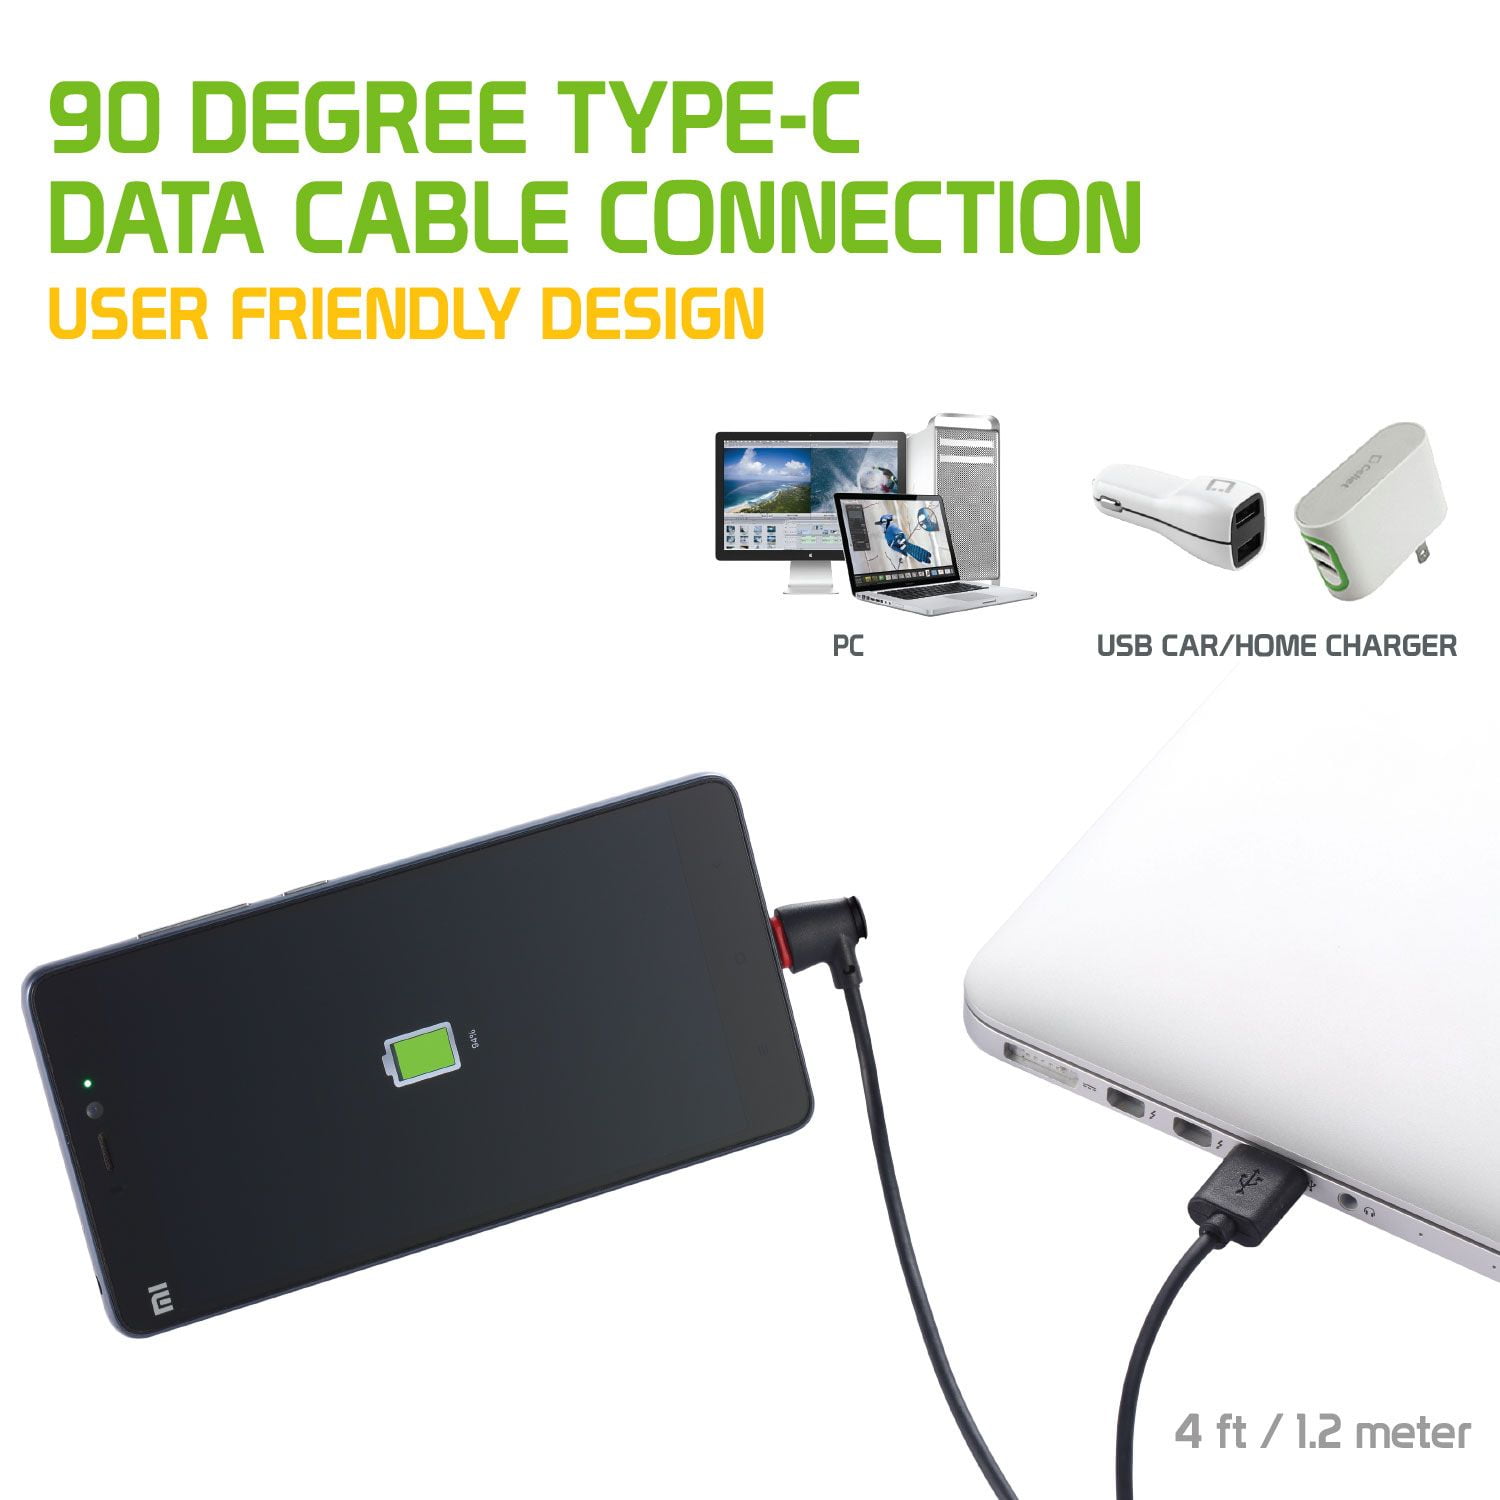 Câble téléphone portable Force Power Cable Ultra Renforce USB-A/C